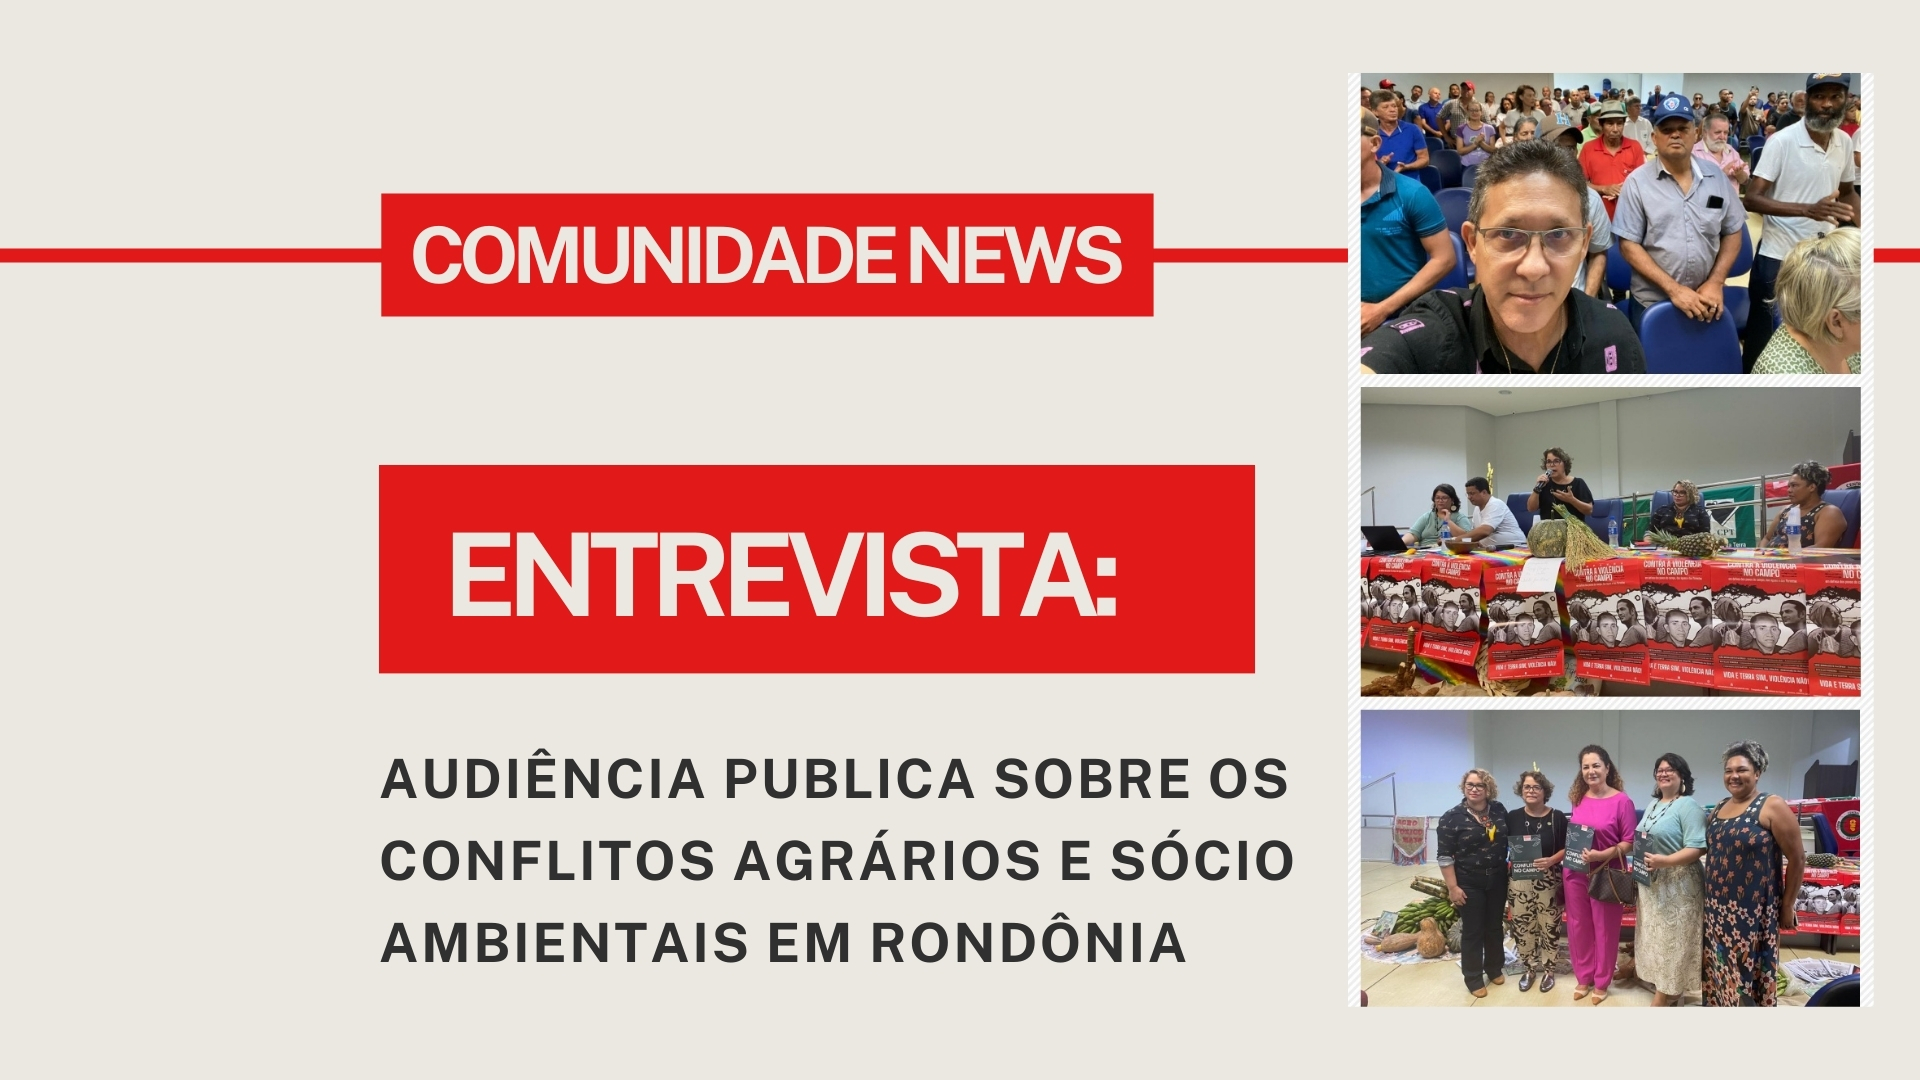 Conflitos Agrários e Socioambientais em Rondônia em Destaque no Programa Comunidade News